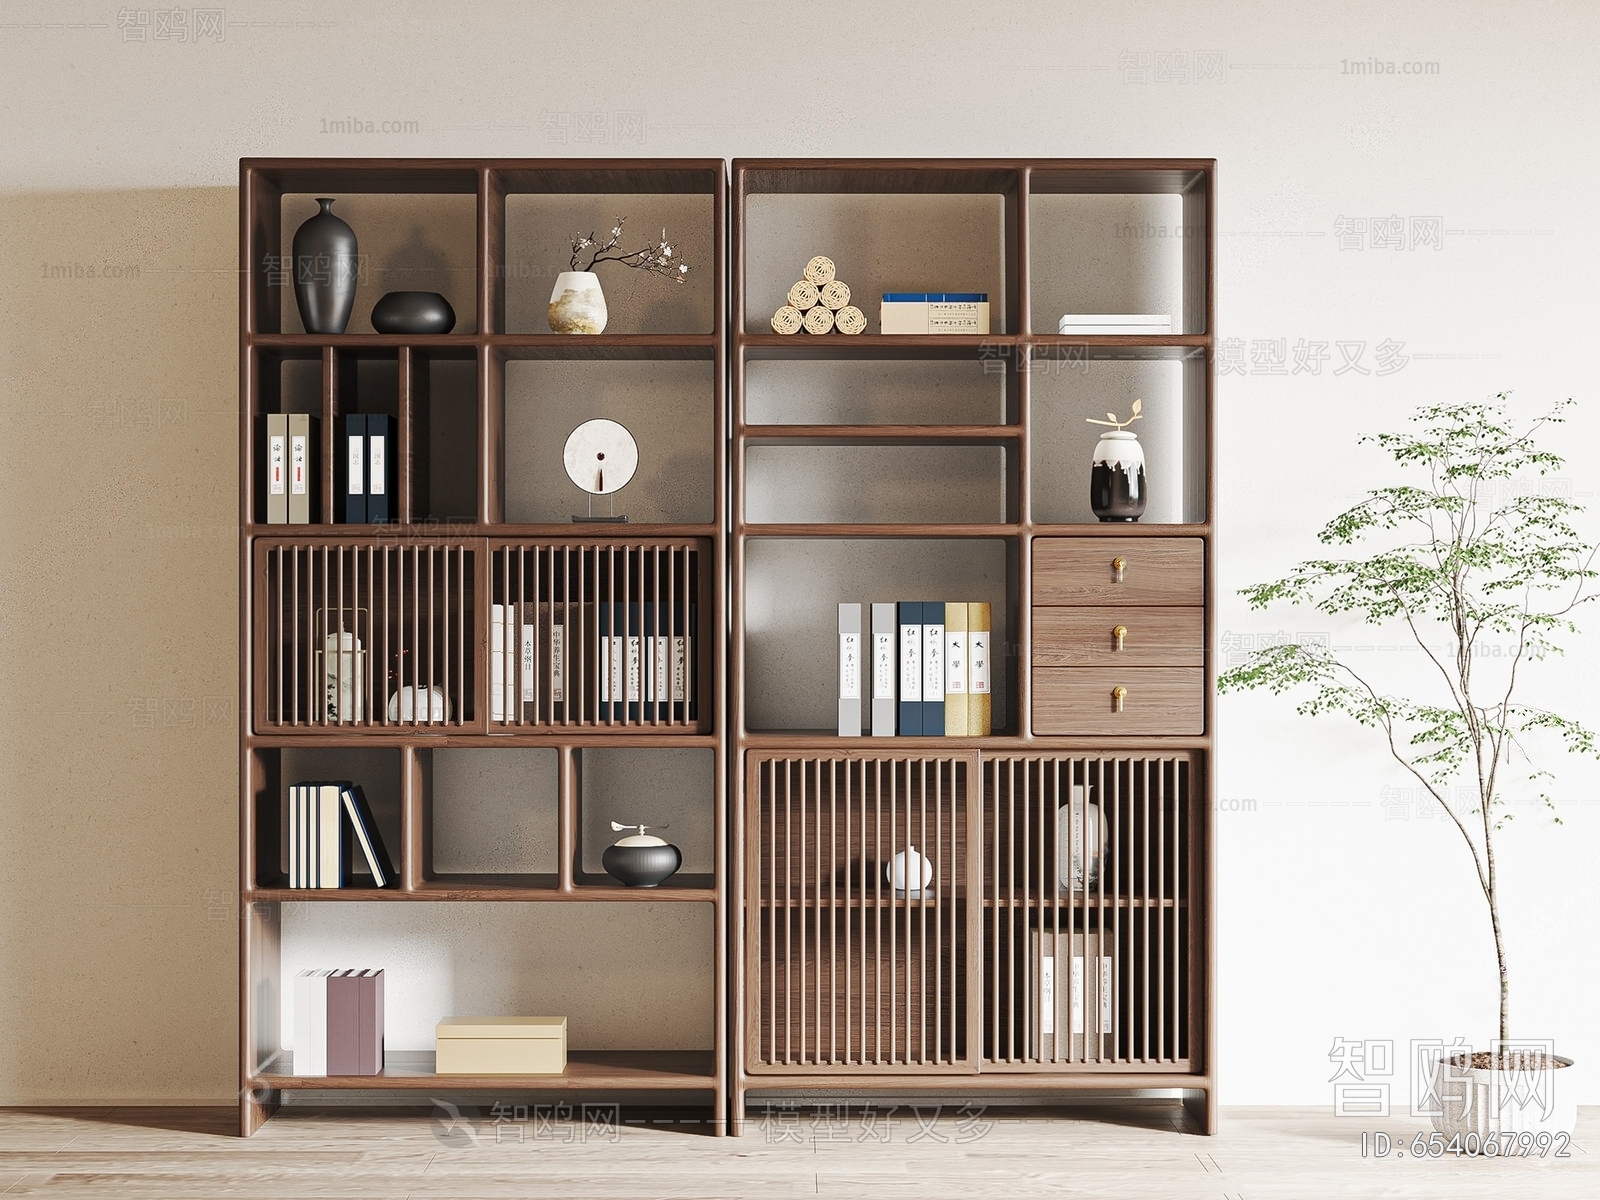 New Chinese Style Bookshelf